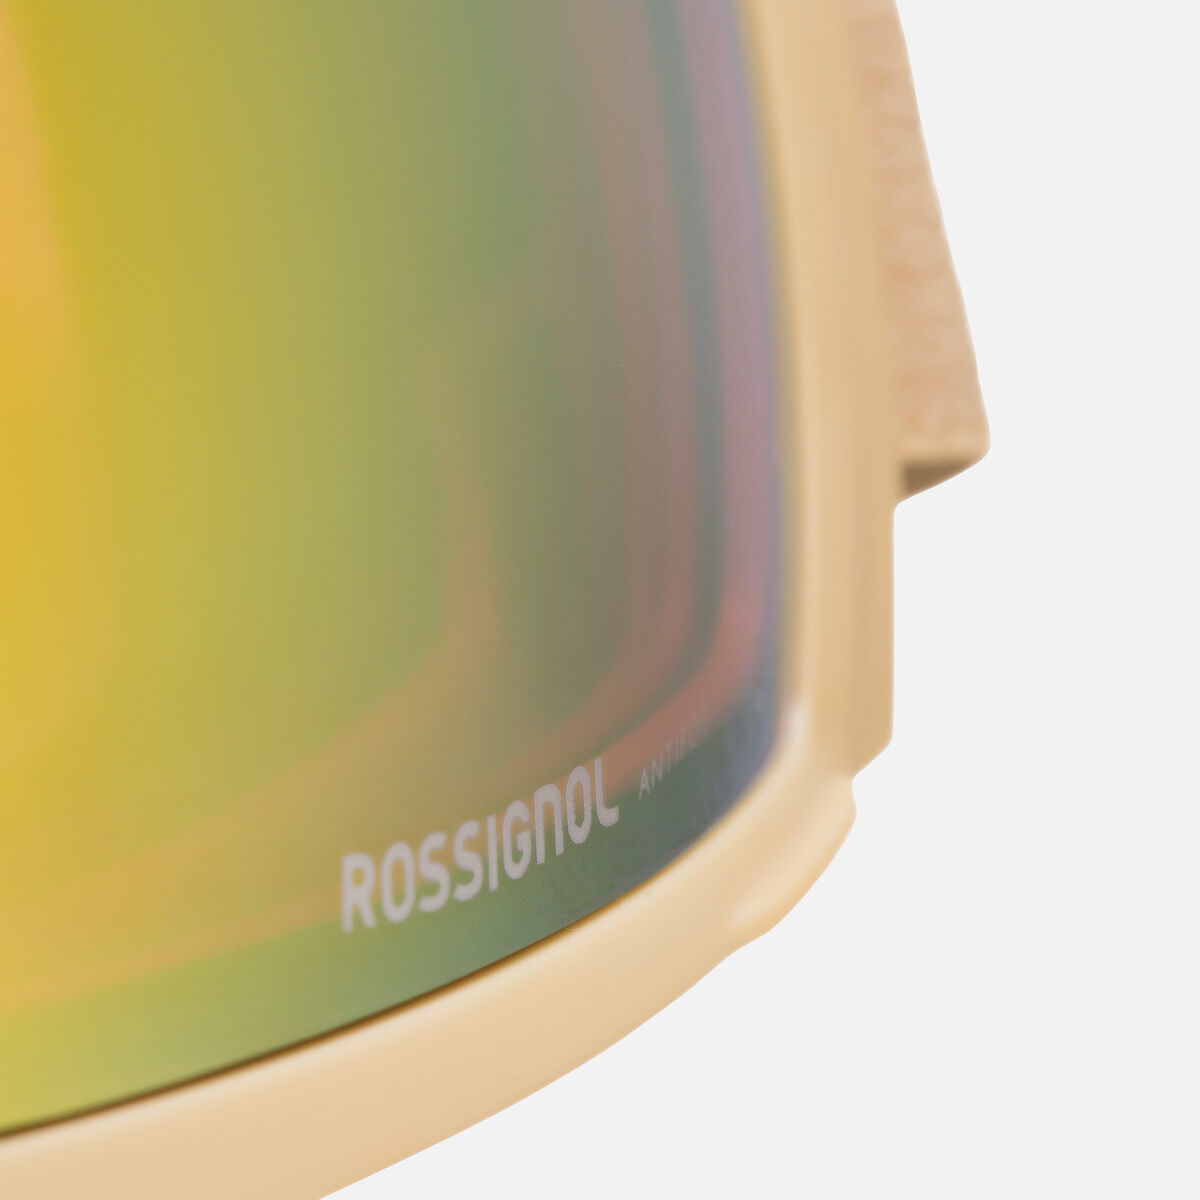 Rossignol Gafas Magne'lens para unisex white